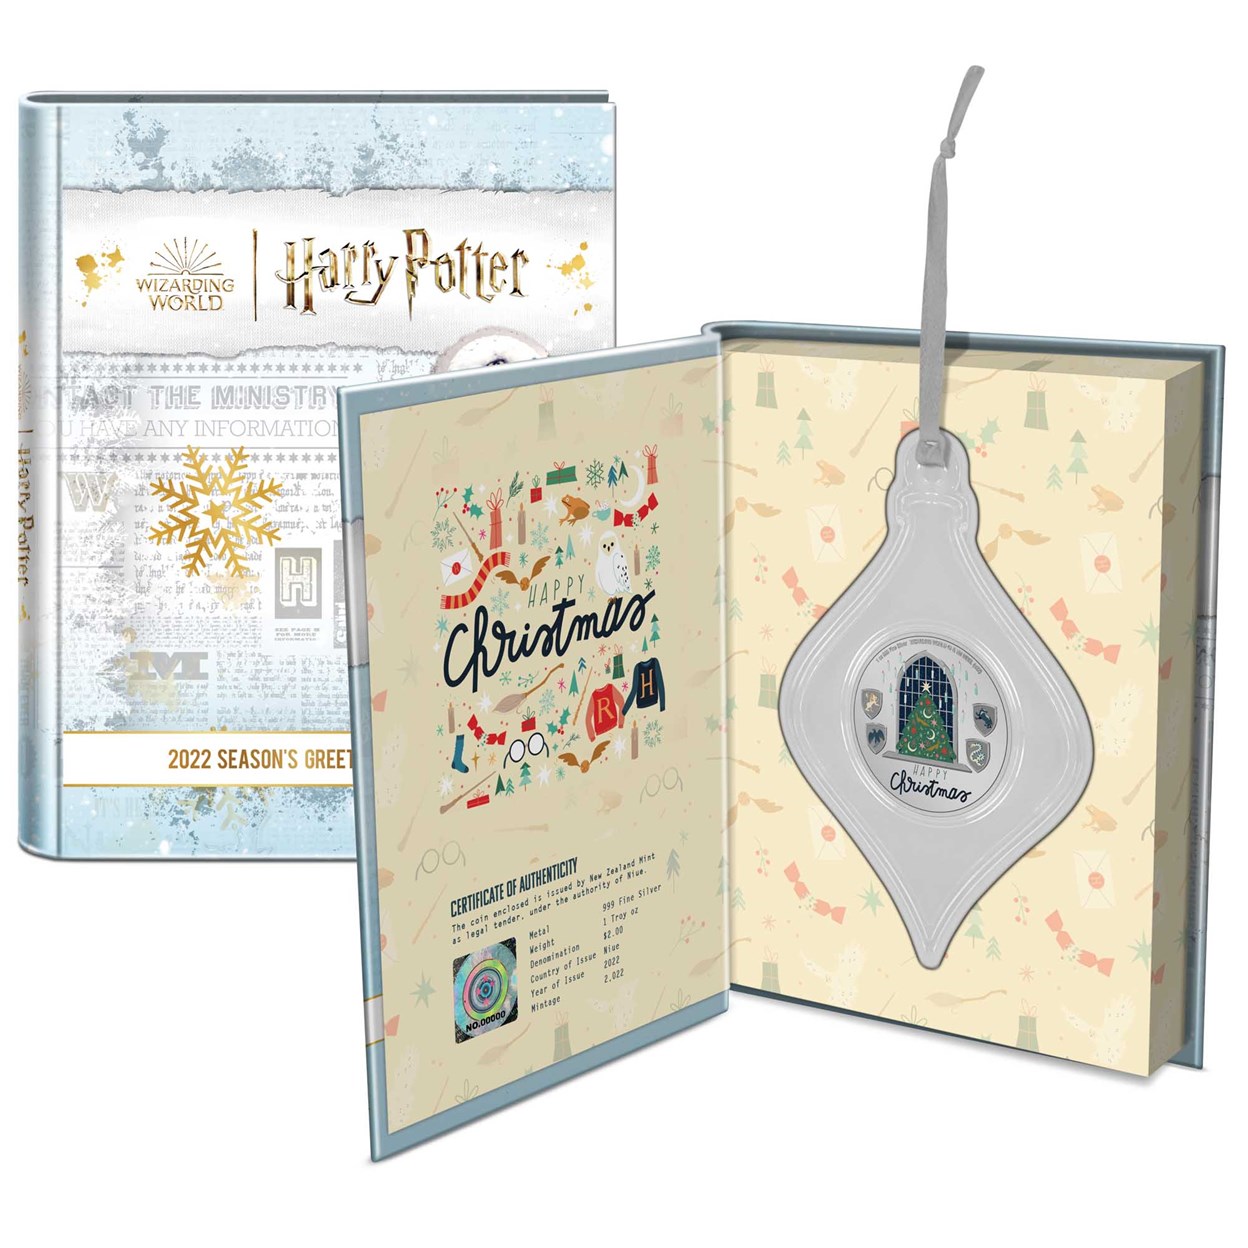 5 2022 Harry Potter Seasons Greetings Packaging